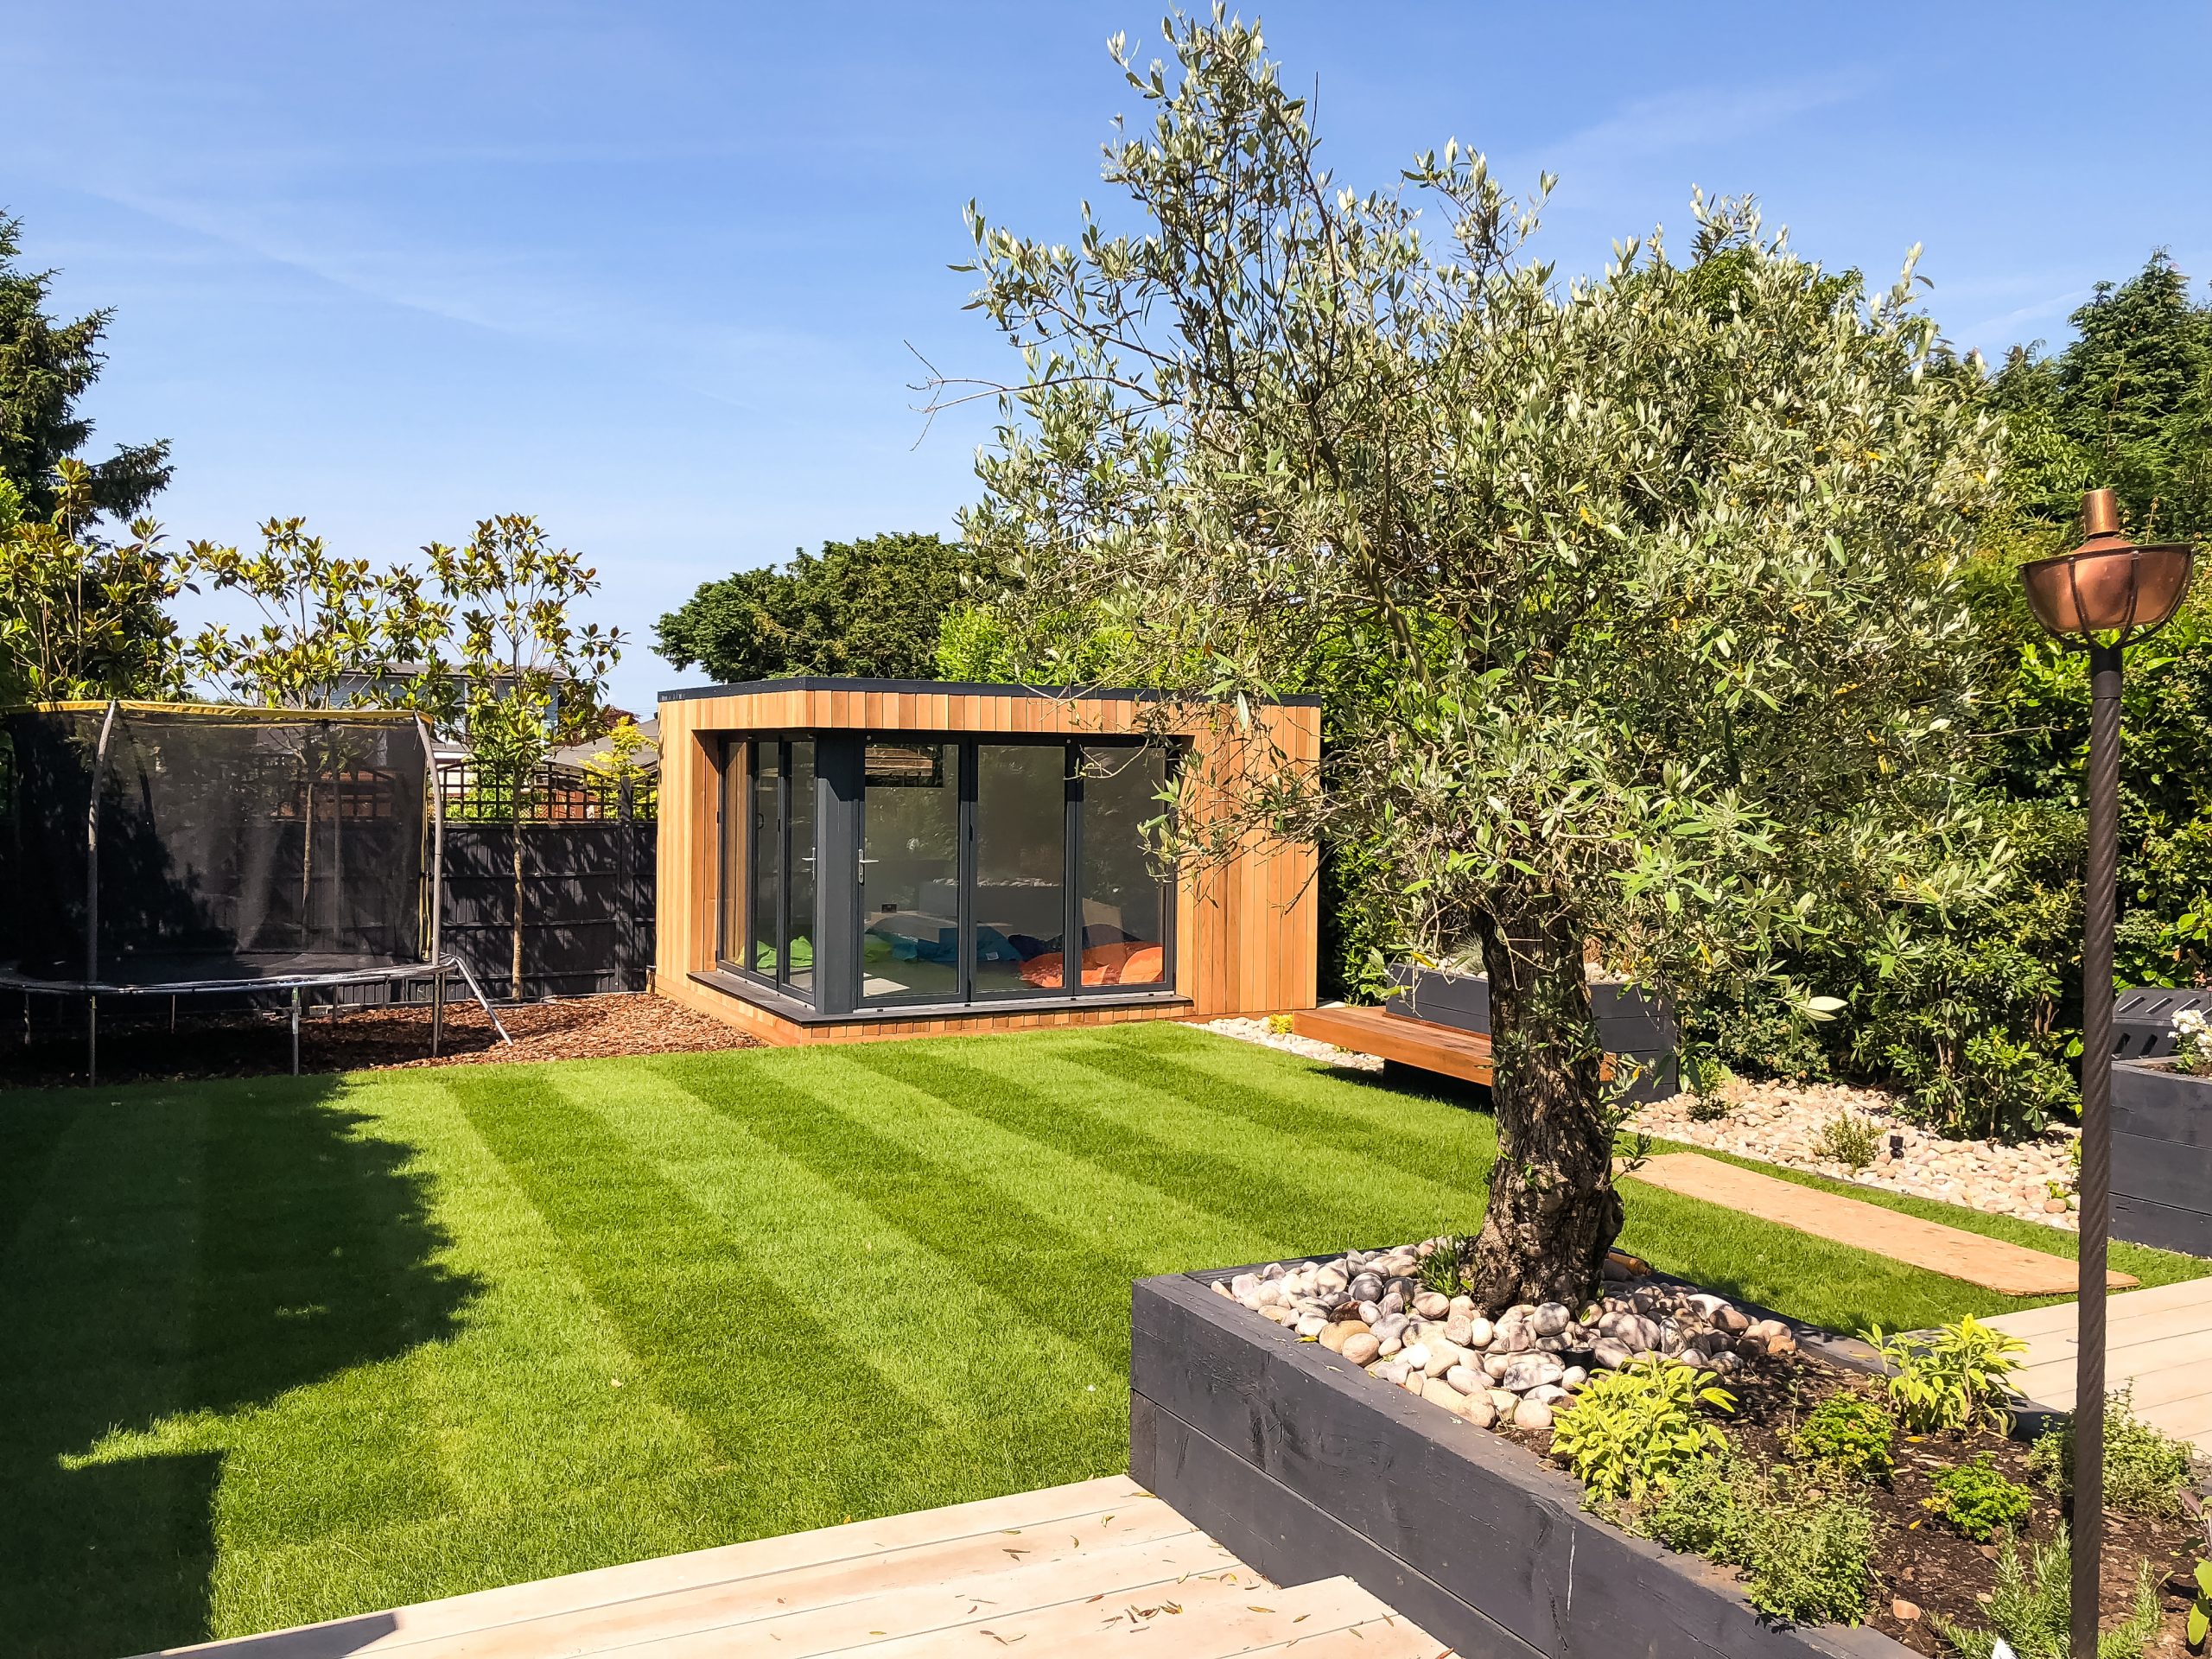 A Vivid Green garden office – Space for work